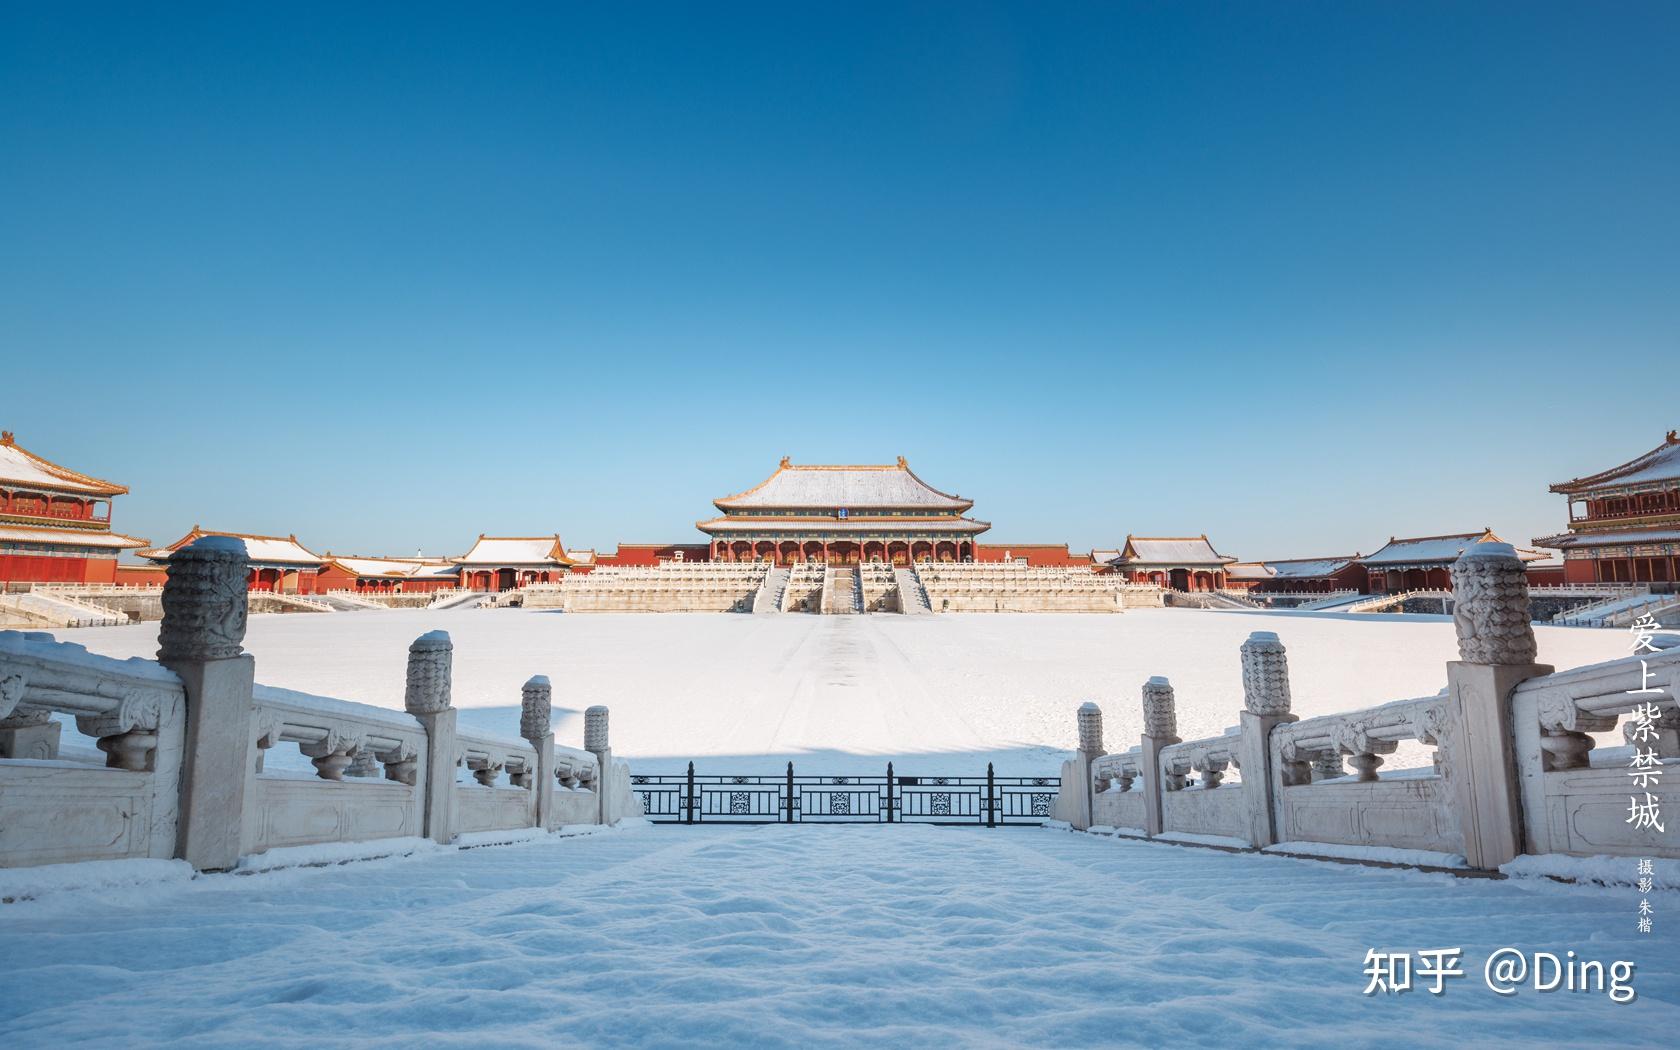 北京故宫有什么特色景点和建筑物?